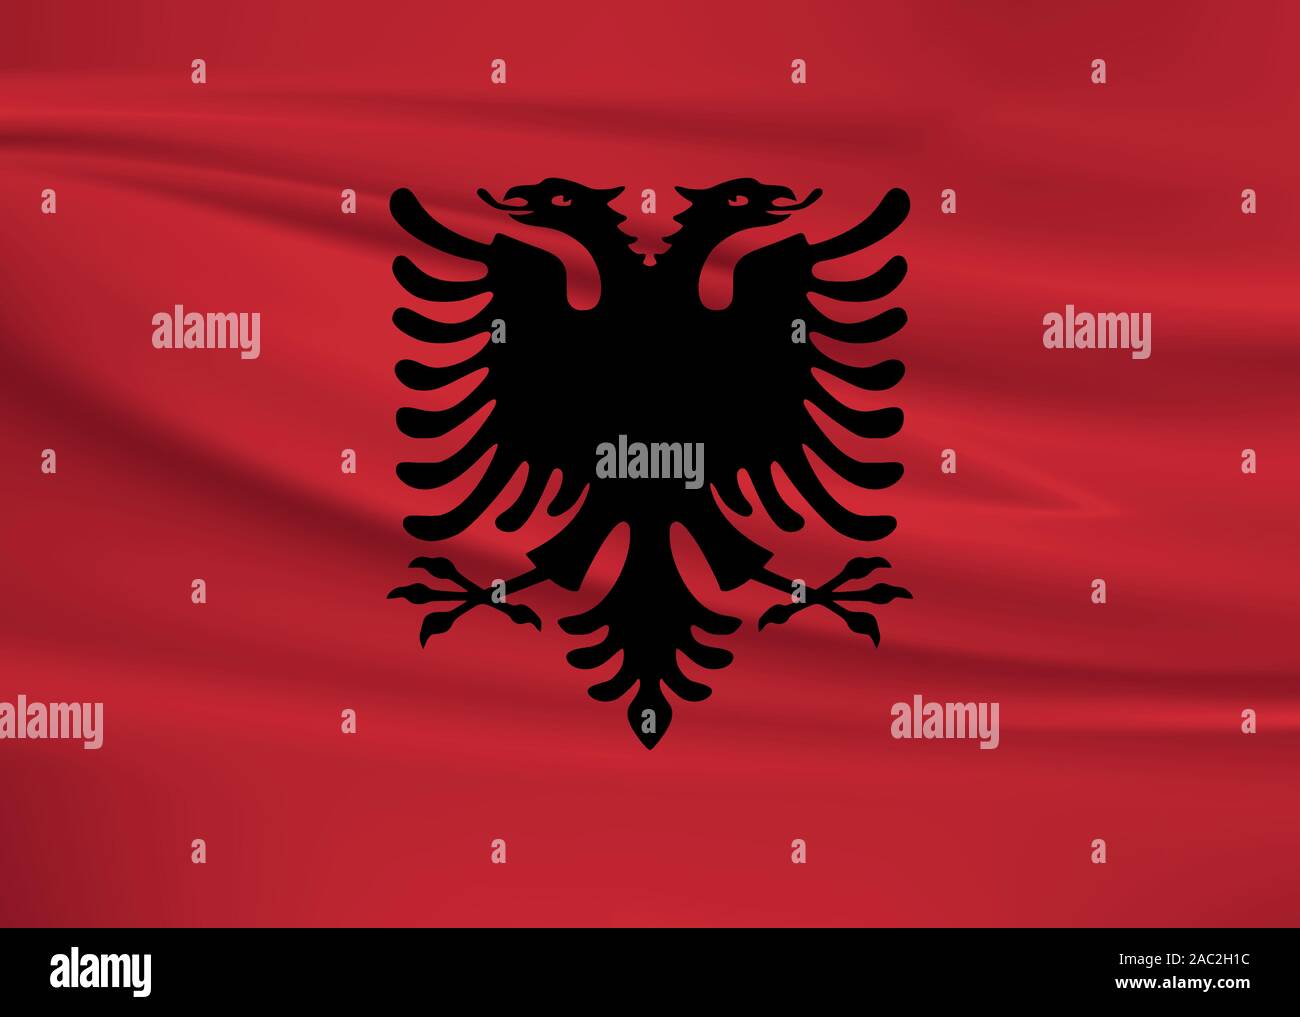 76 Albania Wallpaper  WallpaperSafari